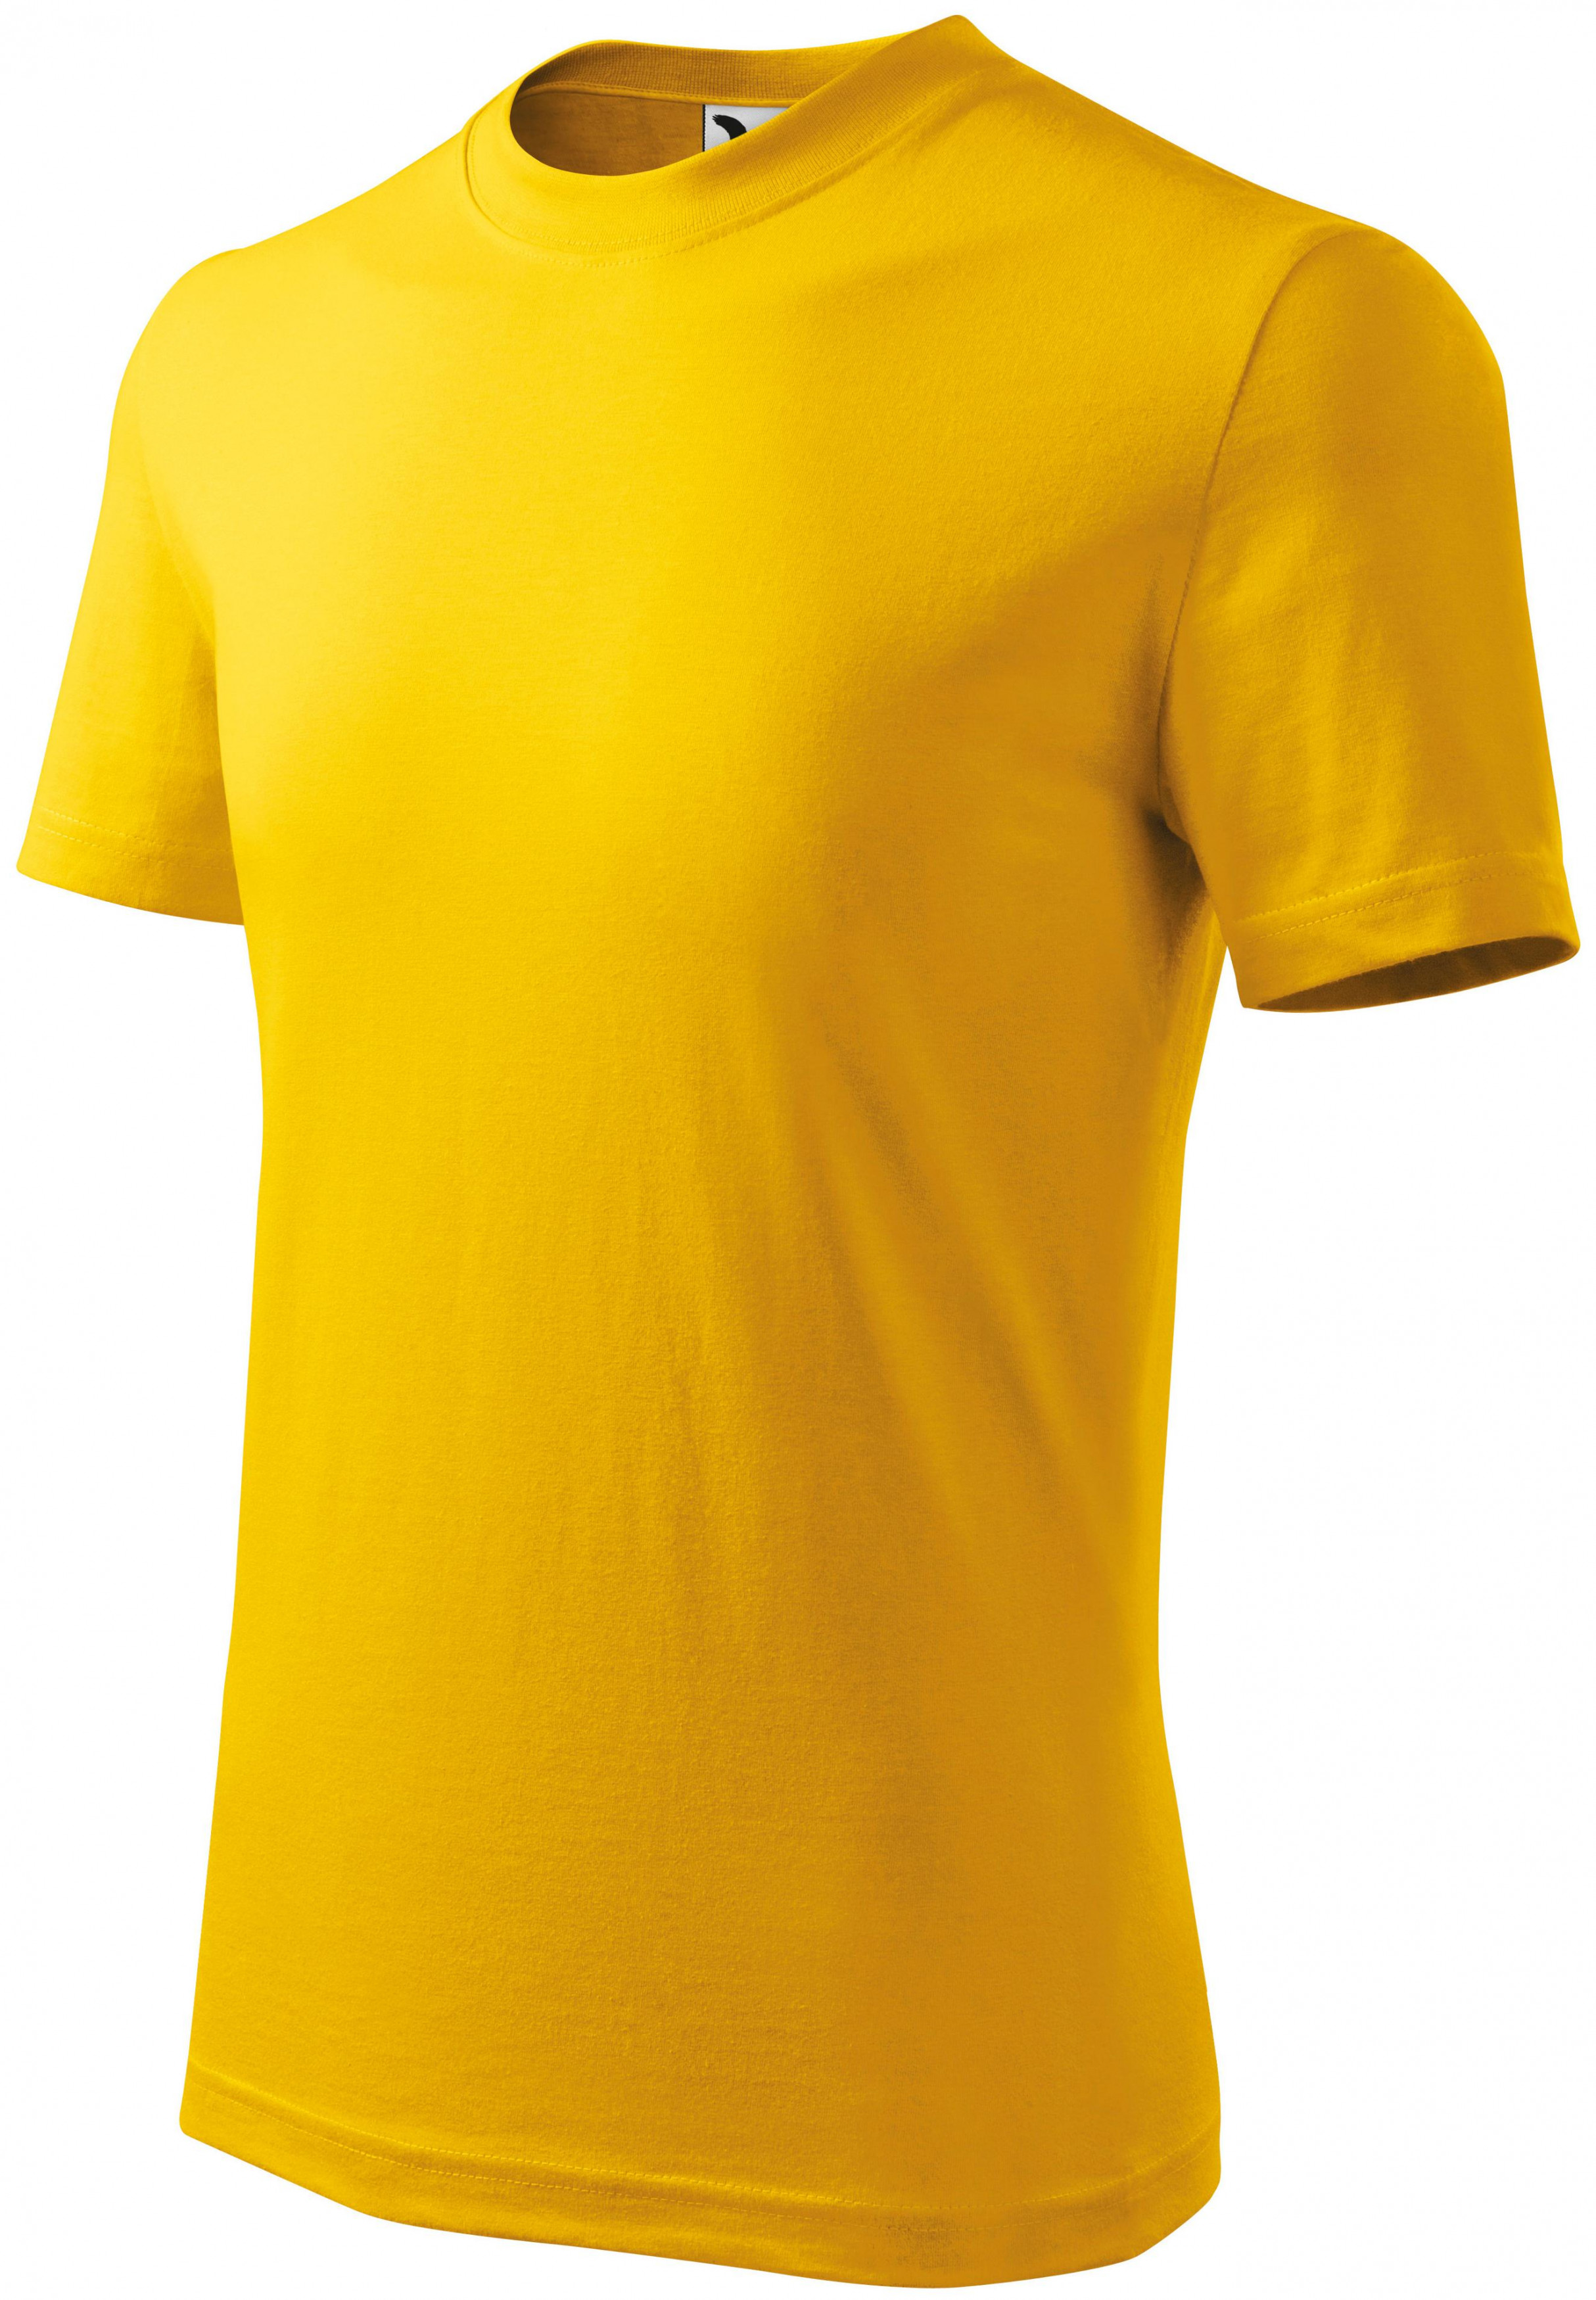 Detské tričko jednoduché, žltá, 122cm / 6rokov